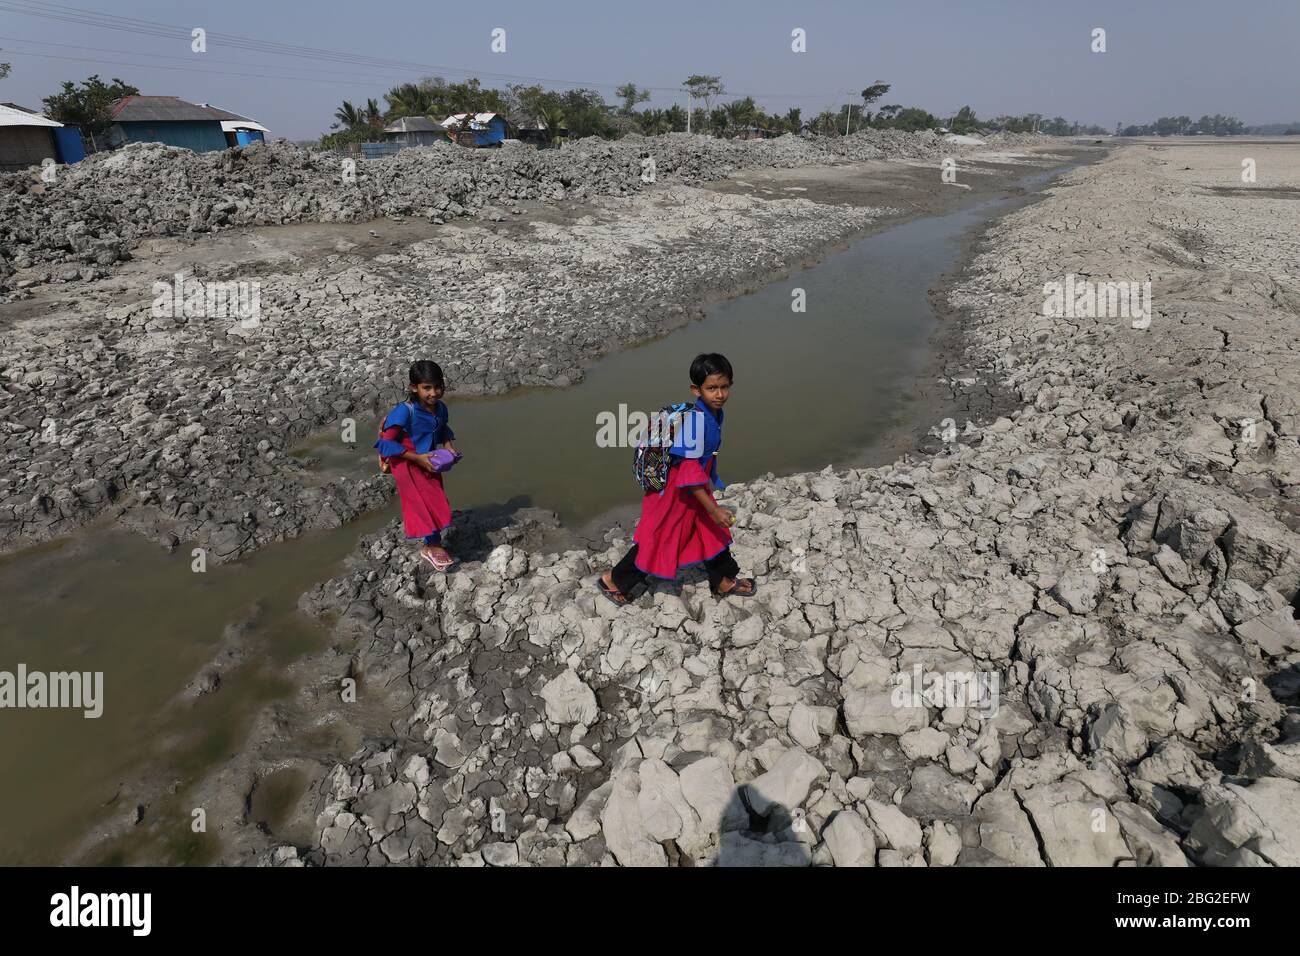 Khulna, Bangladesch: Schulmädchen gehen nach der besuchten Schule am Rande des Sundarbans Mangrovenwaldes, dem Welterbe, in Bangladesch nach Hause. Das Leben der Menschen wird durch die Auswirkungen des Klimawandels jeden Tag schlechter. Die meisten Menschen sind für ihren Lebensunterhalt auf den Wald angewiesen. Die Wasserkrise ist eines der größten Probleme in ihrem Leben, da salzhales Wasser über die Küste in Bangladesch geht. Die meisten Menschen haben an die Flüsse gefischt, einige von ihnen sammeln Honig und Holz aus dem Mangrovenwald. In der Trockenzeit leiden die Menschen unter reinem Trinkwasser. Stockfoto